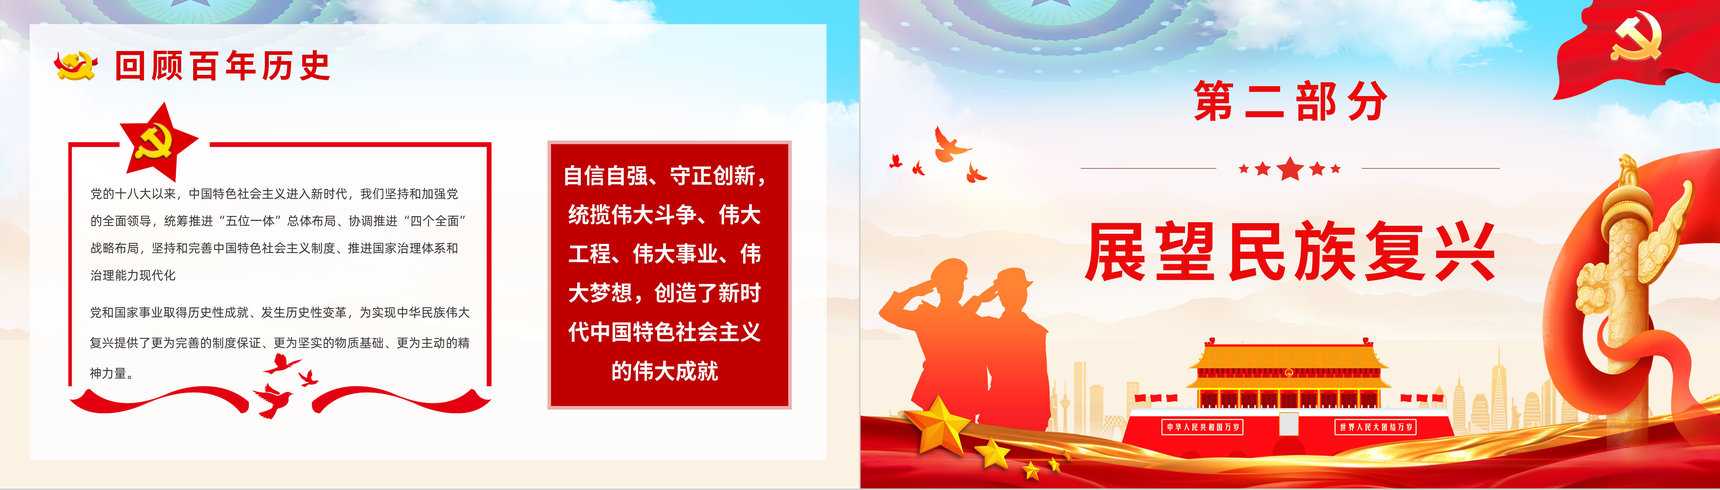 中国共产党百年辉煌宣传建党一百周年大会讲话精神解读学习动员大会PPT模板-5